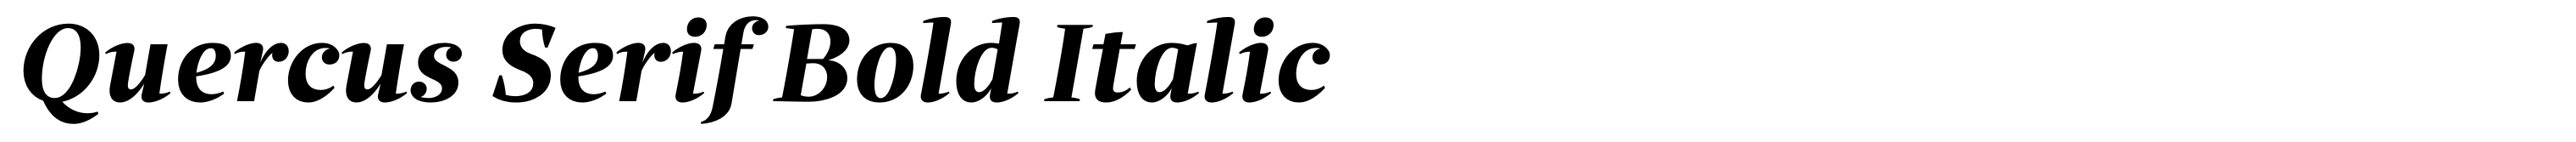 Quercus Serif Bold Italic